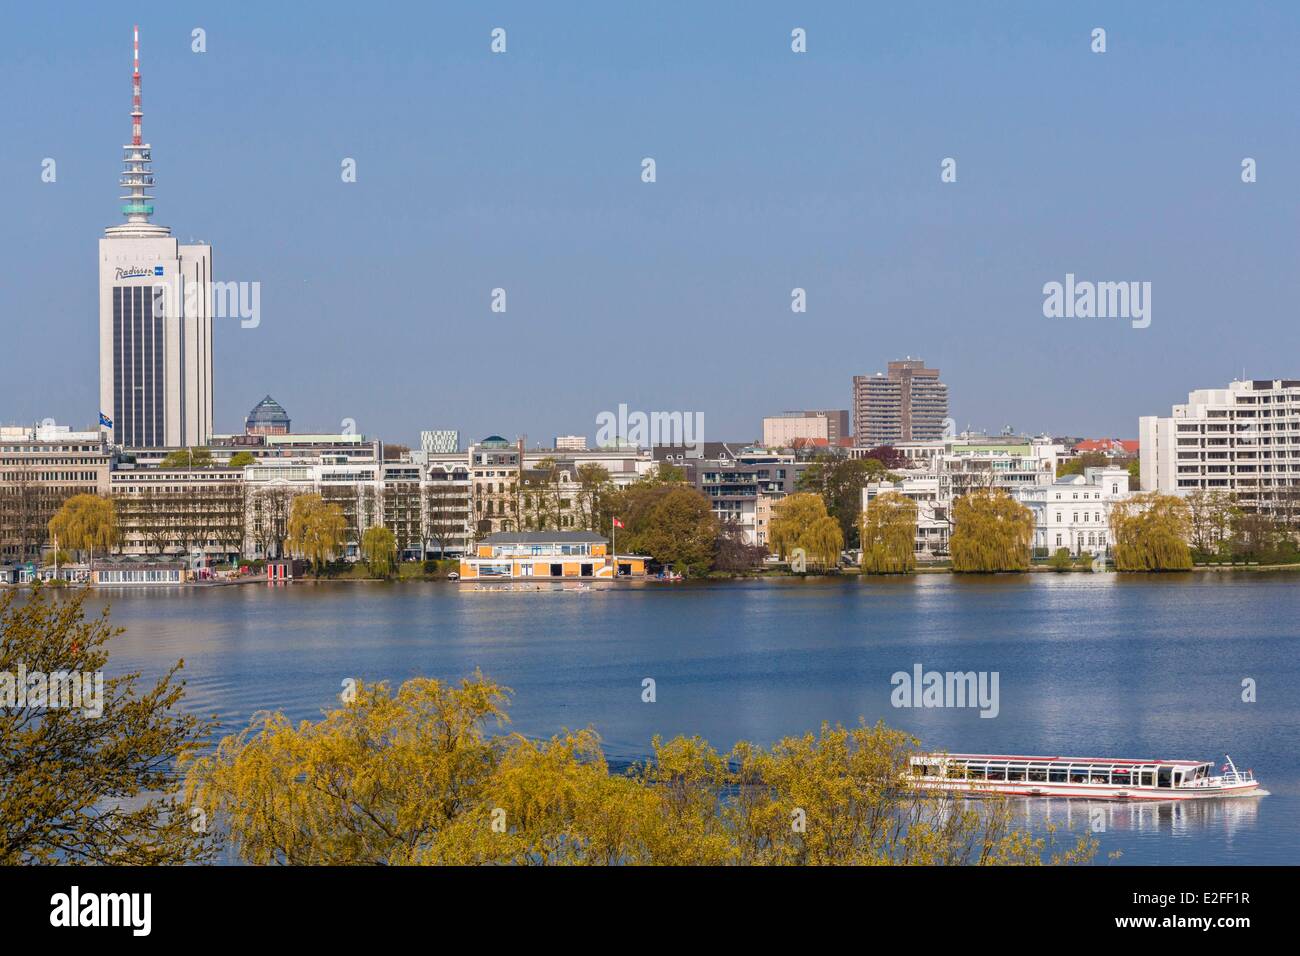 Germania, Amburgo, Aussenalster (Alster esterno), il lago nel cuore della città Foto Stock